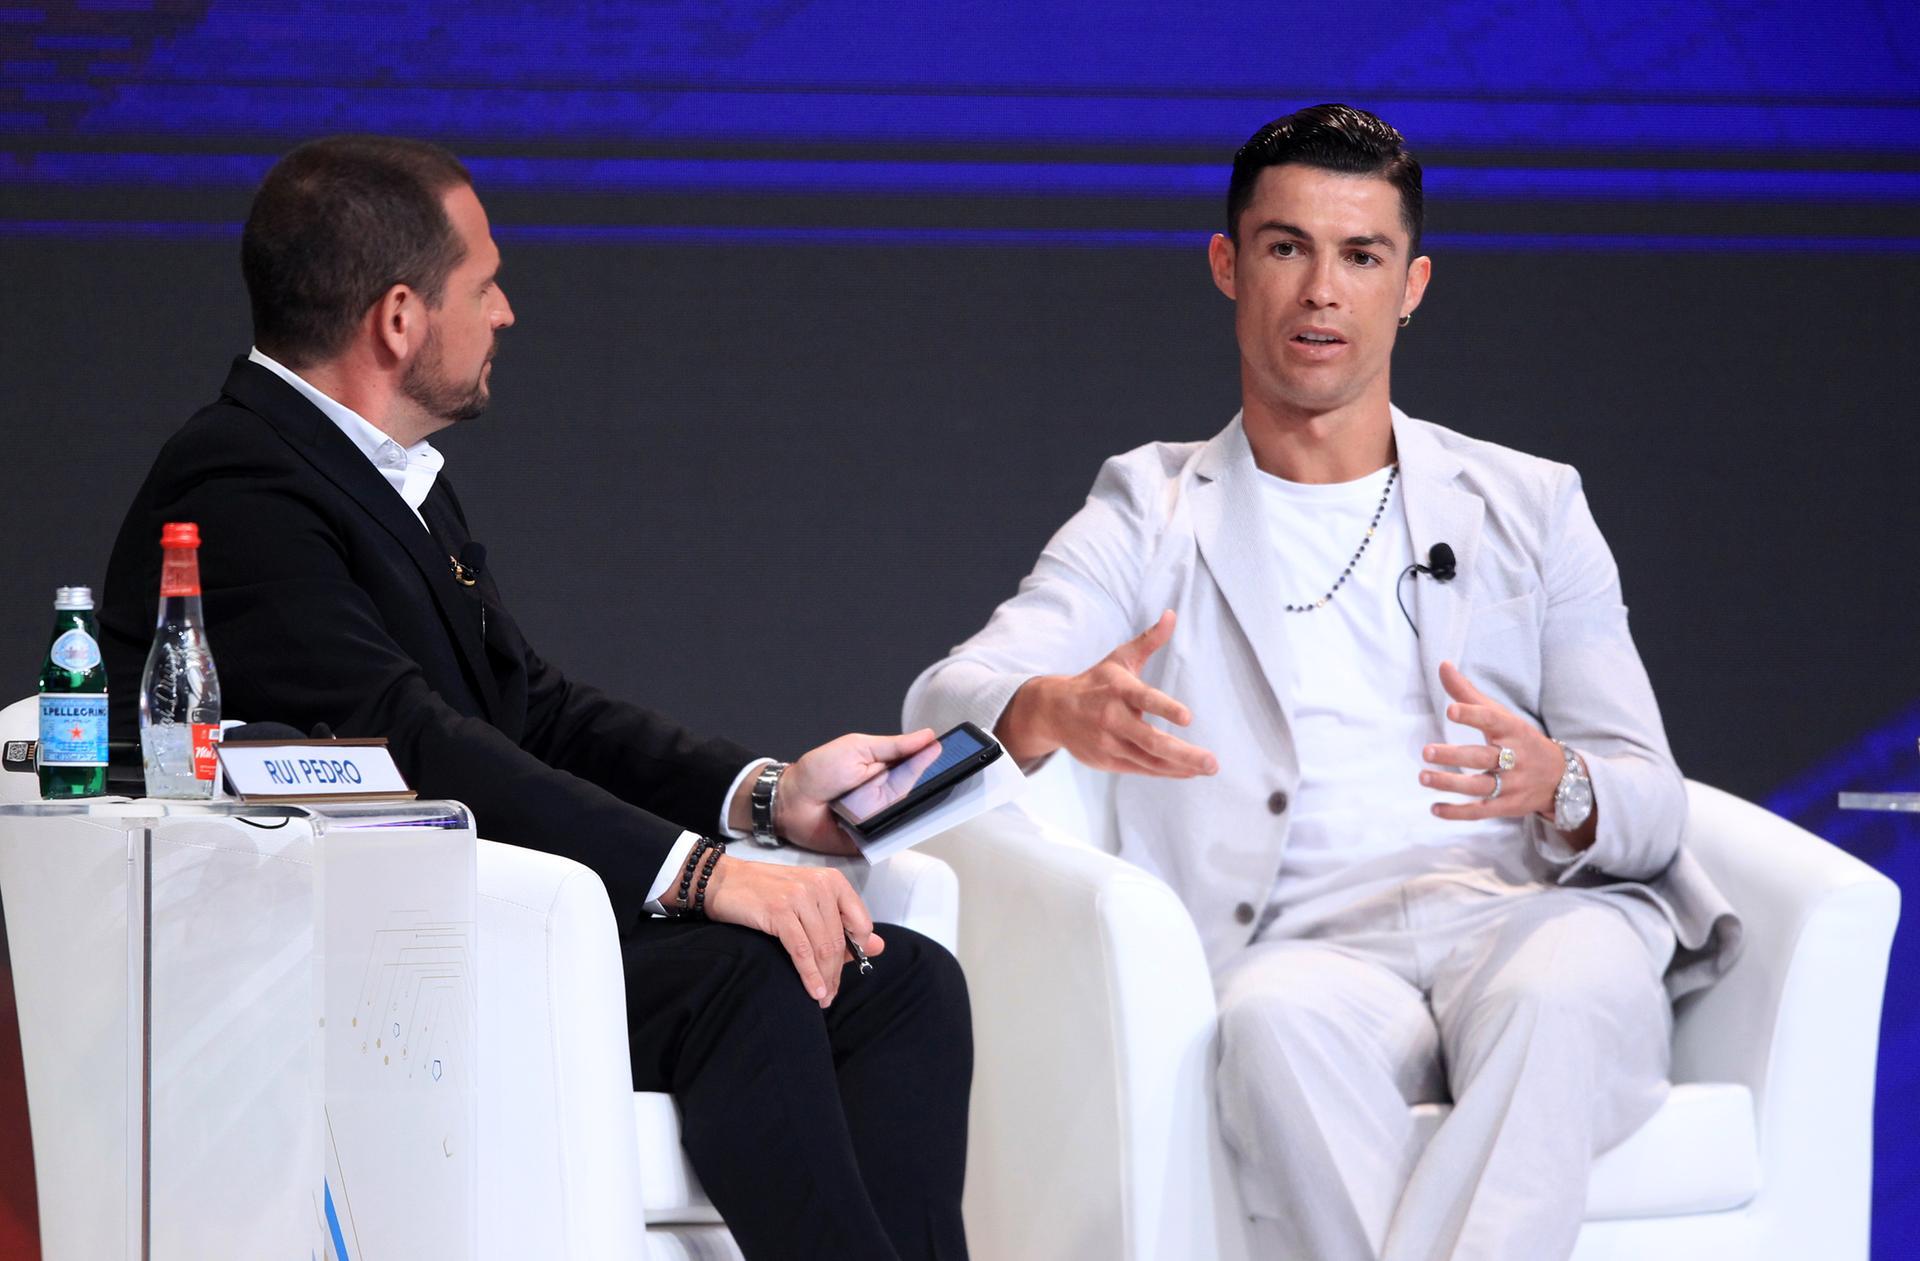 Cristiano Ronaldo drips in diamonds at Dubai sports conference